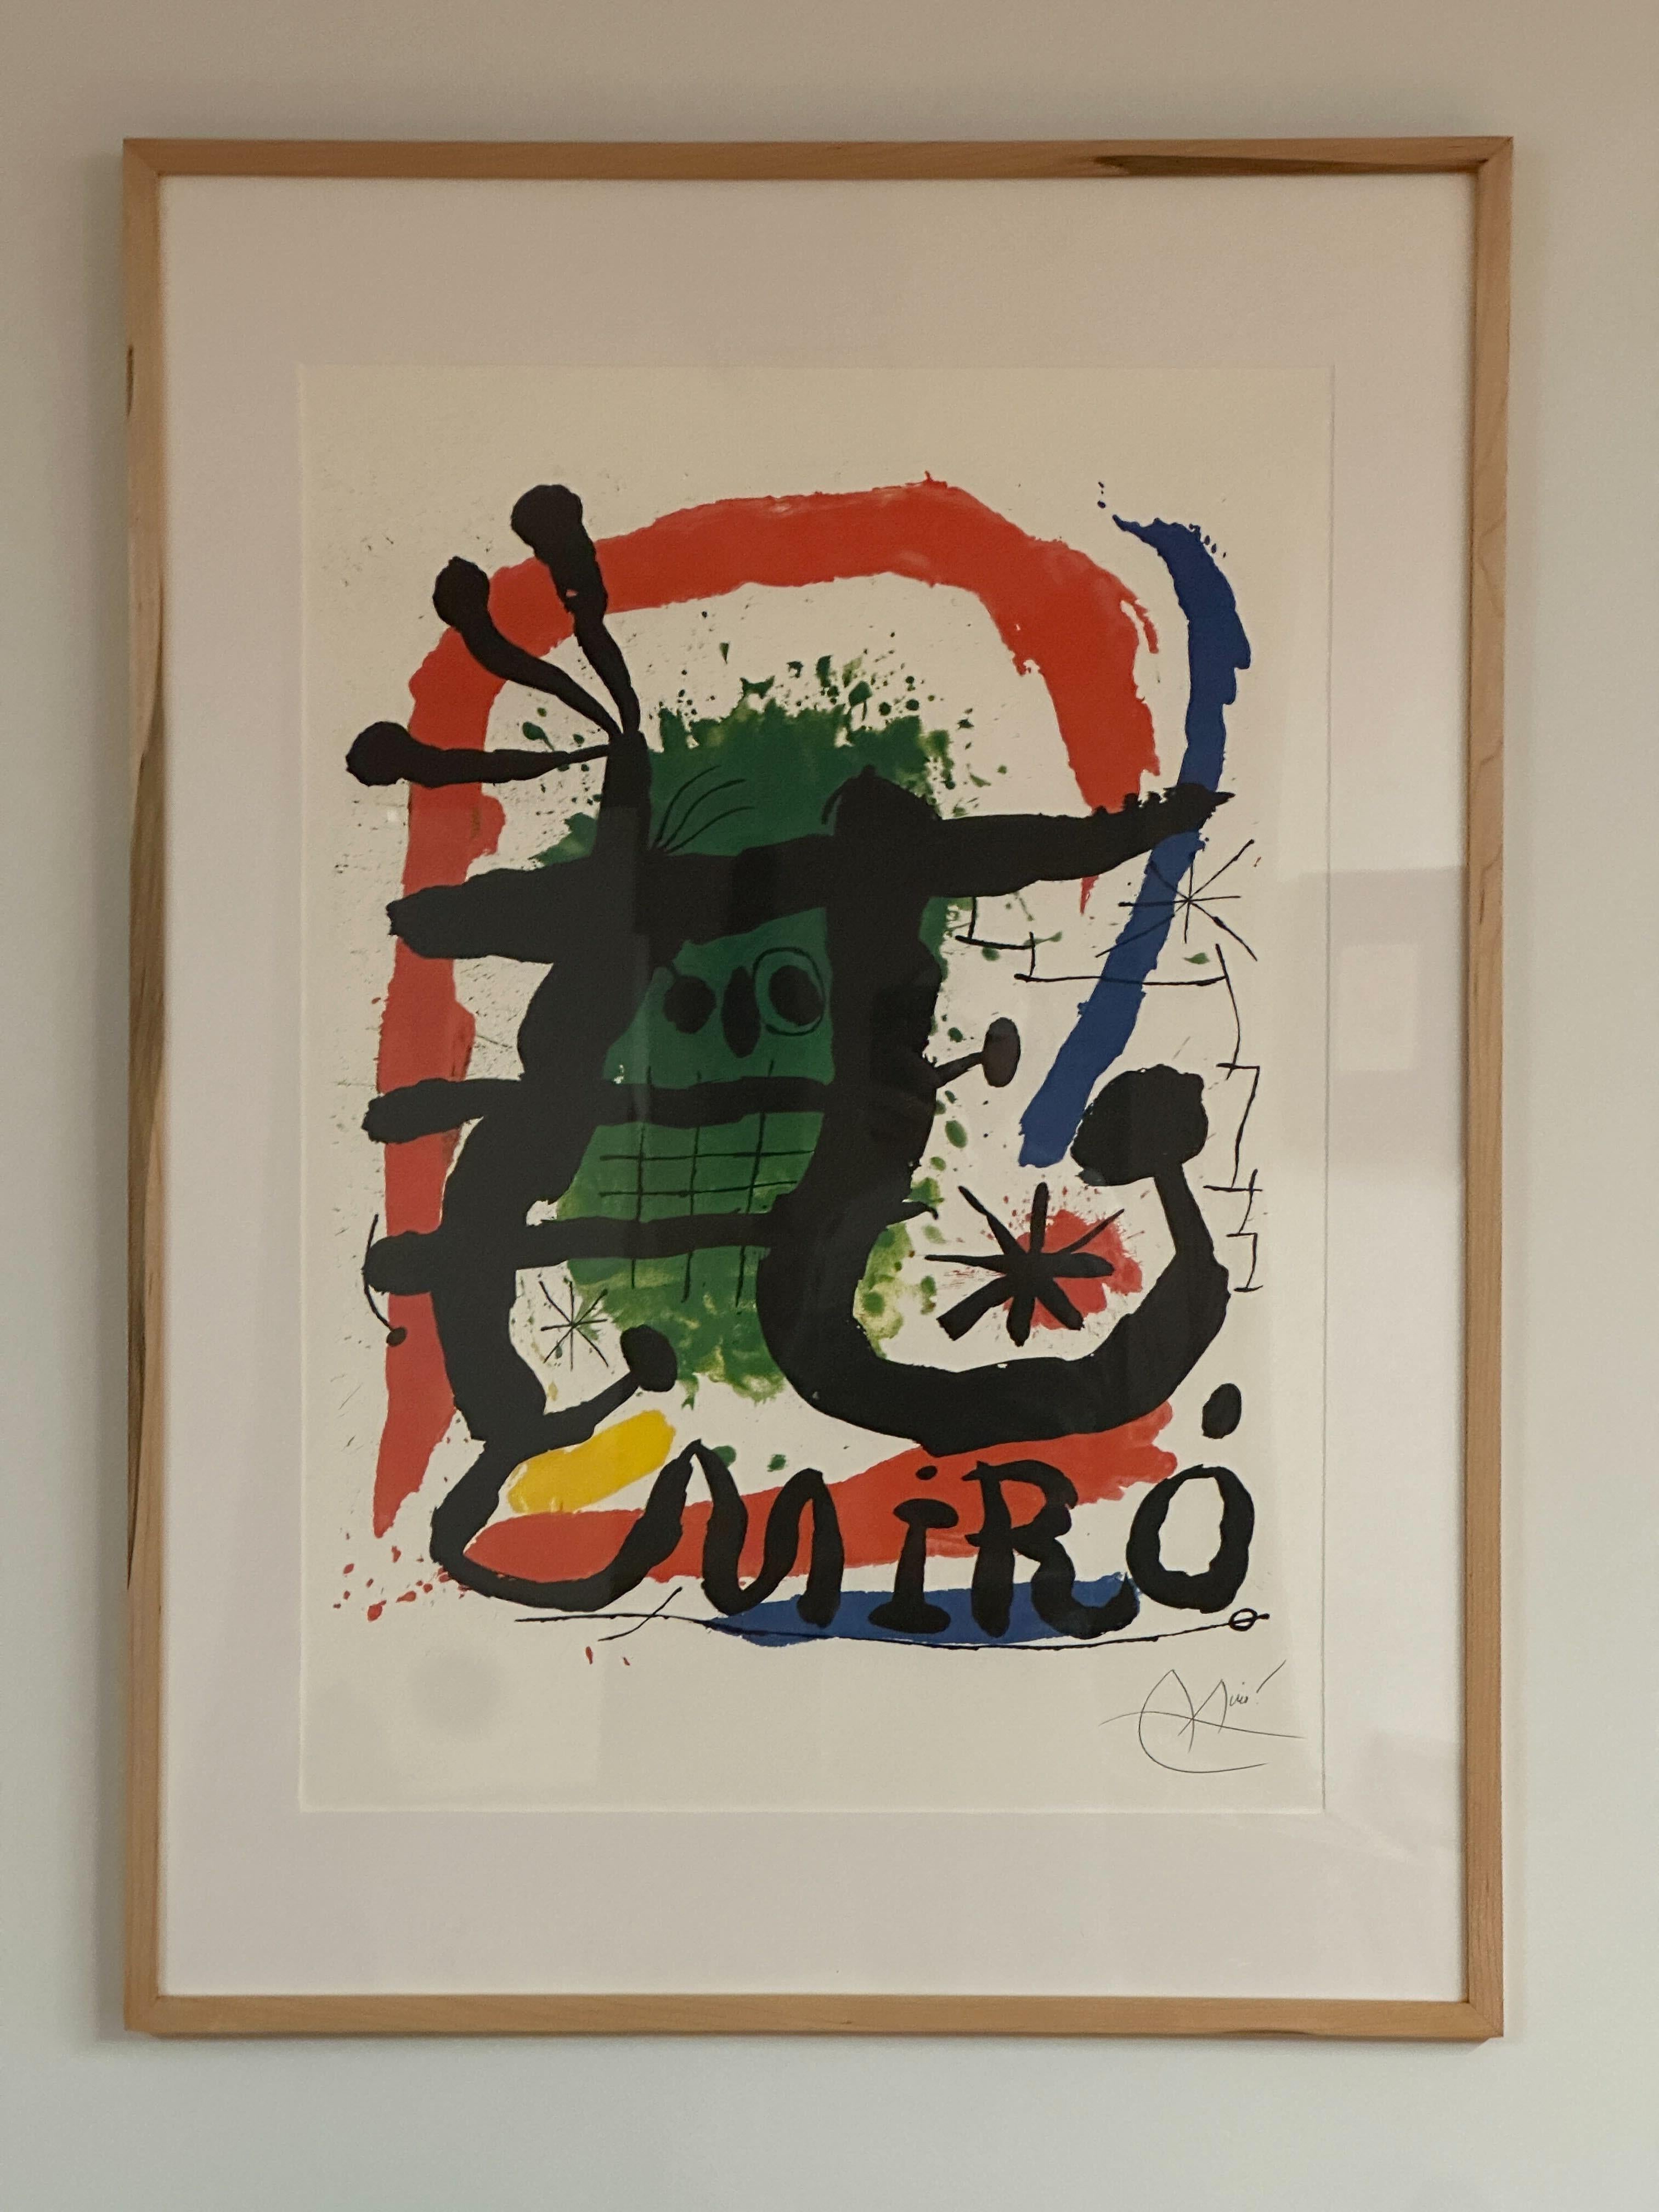 Cette lithographie en couleurs de Joan Miro est en bon état général et est encadrée 37